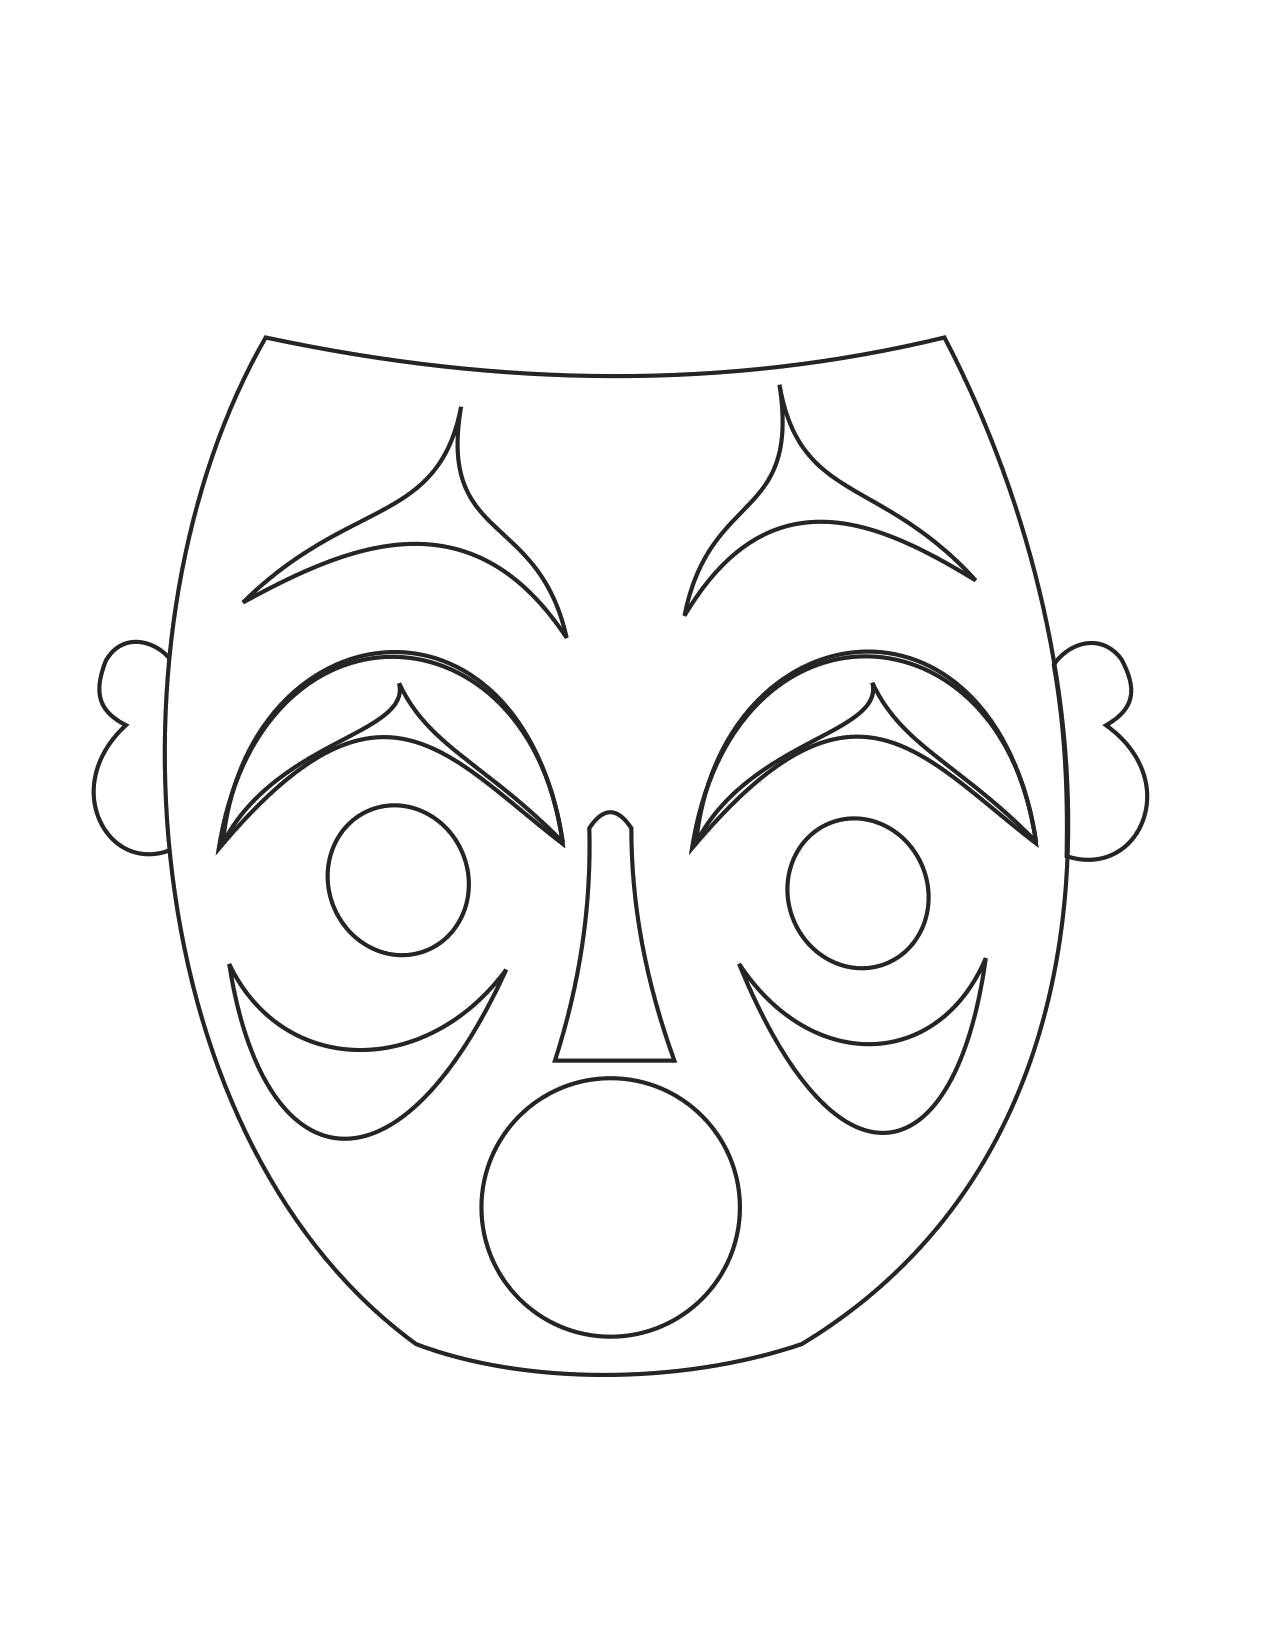 Распечатать маску человека. Маска раскраска. Трафареты театральных масок для лица. Маска для распечатки. Шаблоны масок для театра.